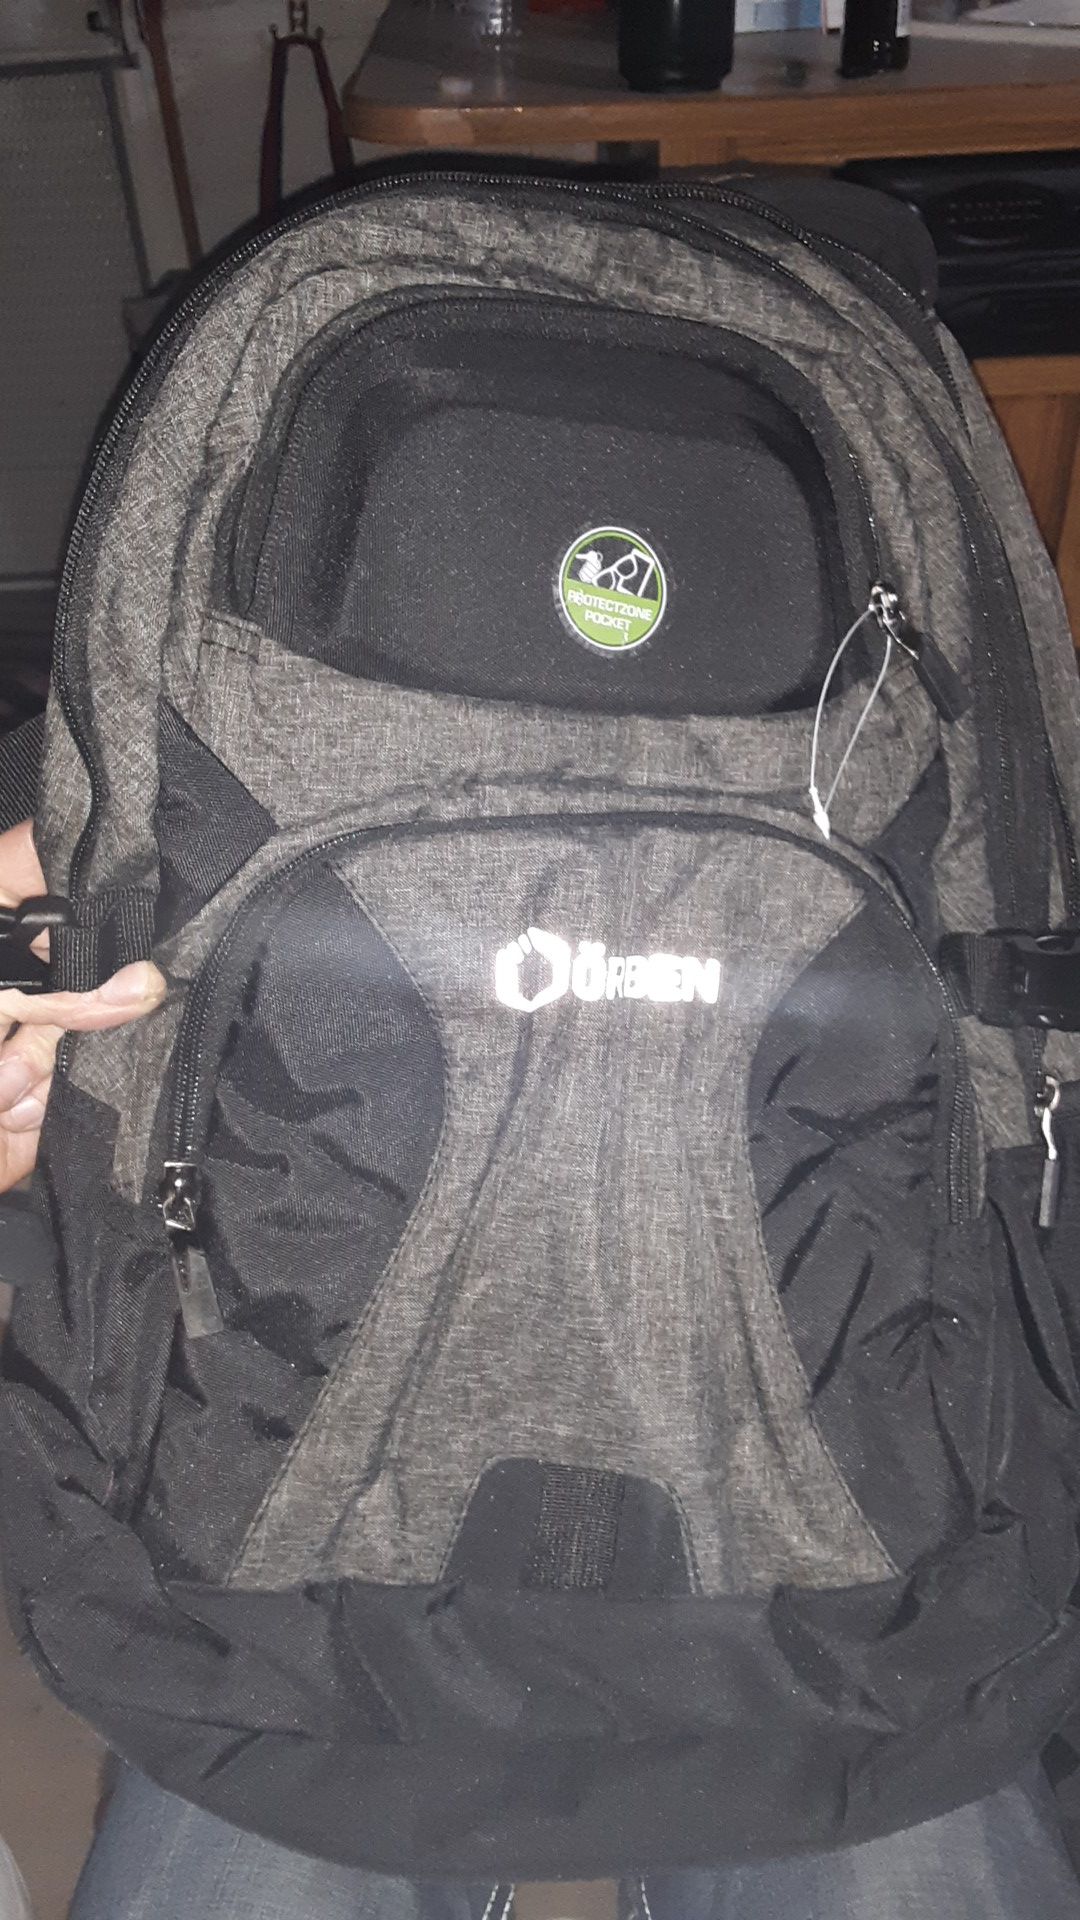 ORBEN laptop backpack